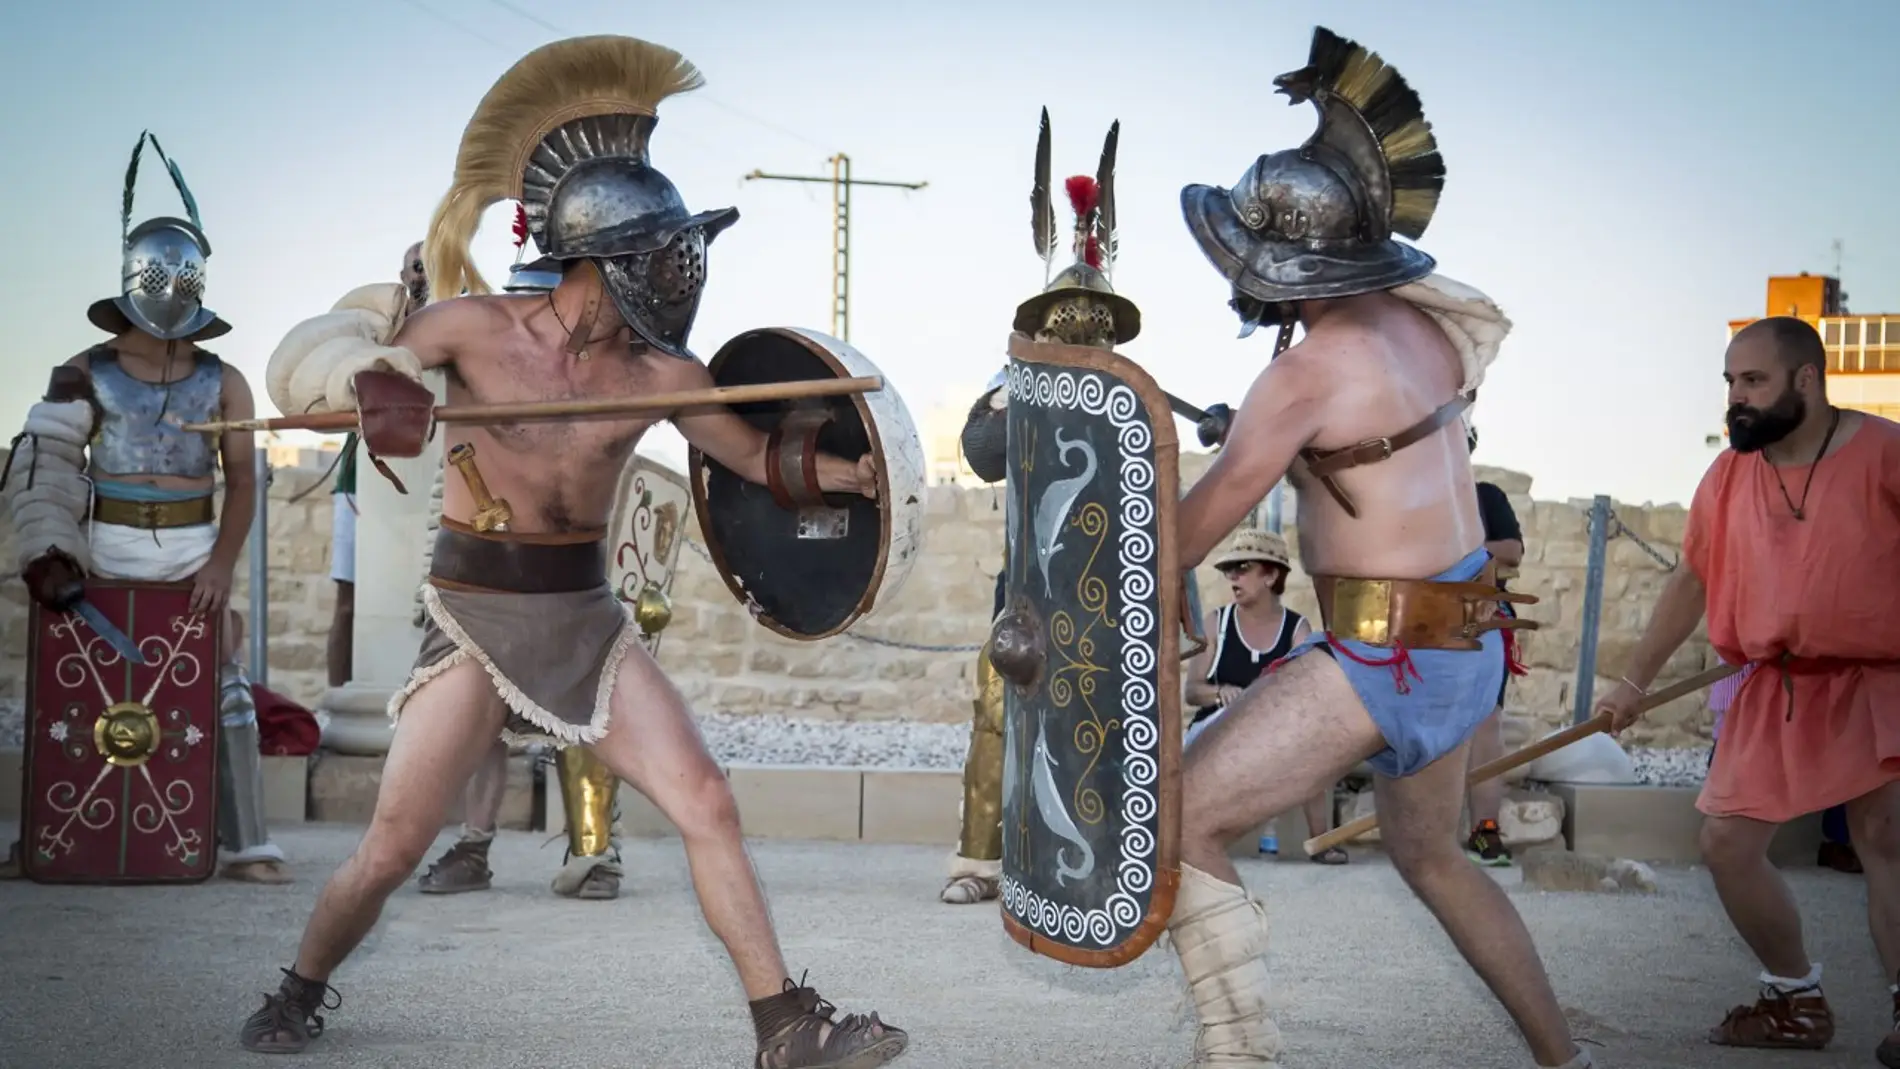 Recreación histórica de la lucha de gladiadores en la antigua Roma 